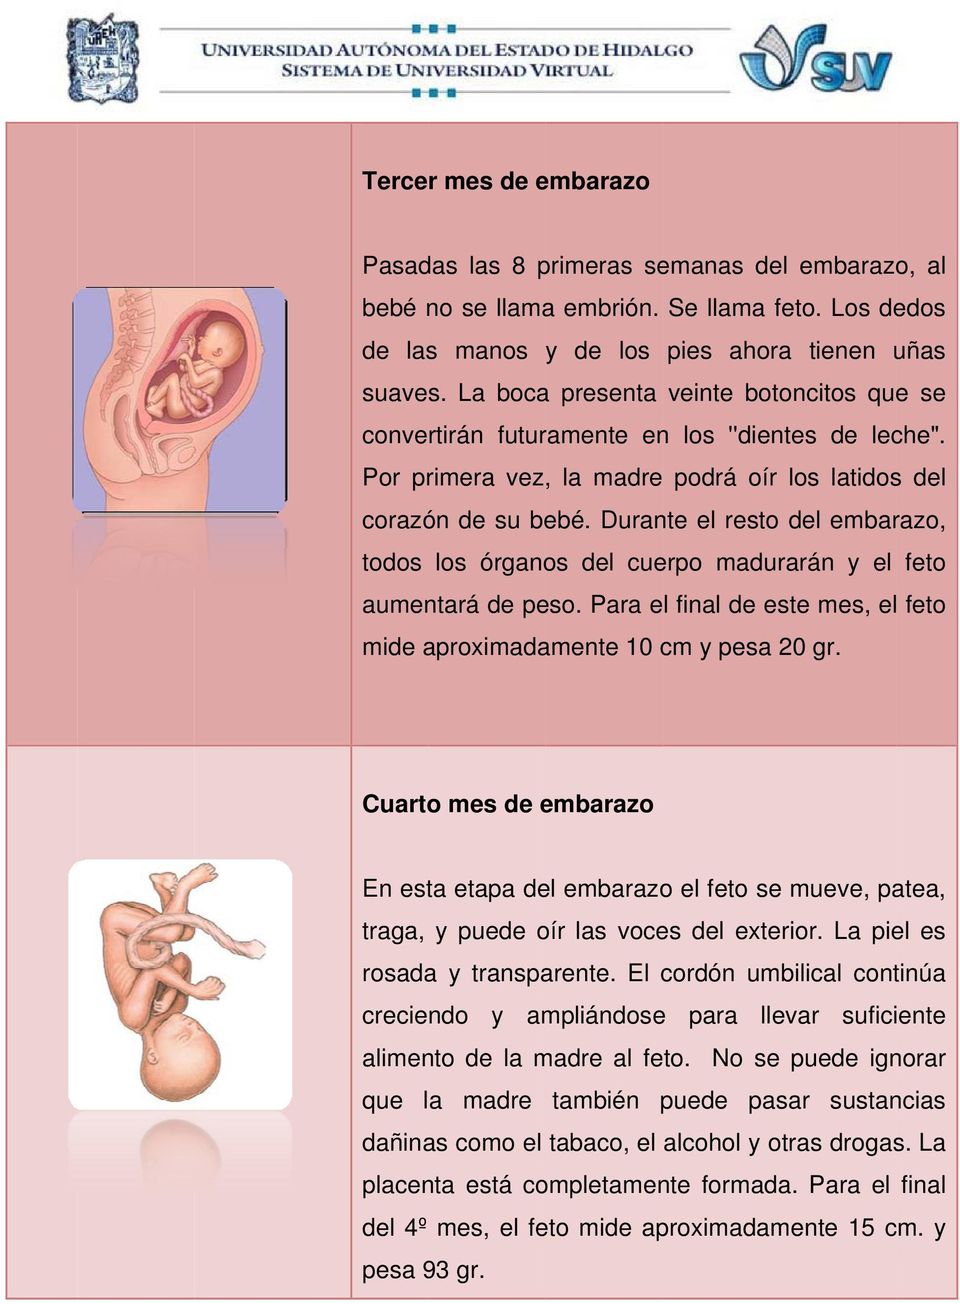 Durante el resto del embarazo, todos los órganos del cuerpo madurarán y el feto aumentará de peso. Para el final de este mes, el feto mide aproximadamente 10 cm y pesa 20 gr.